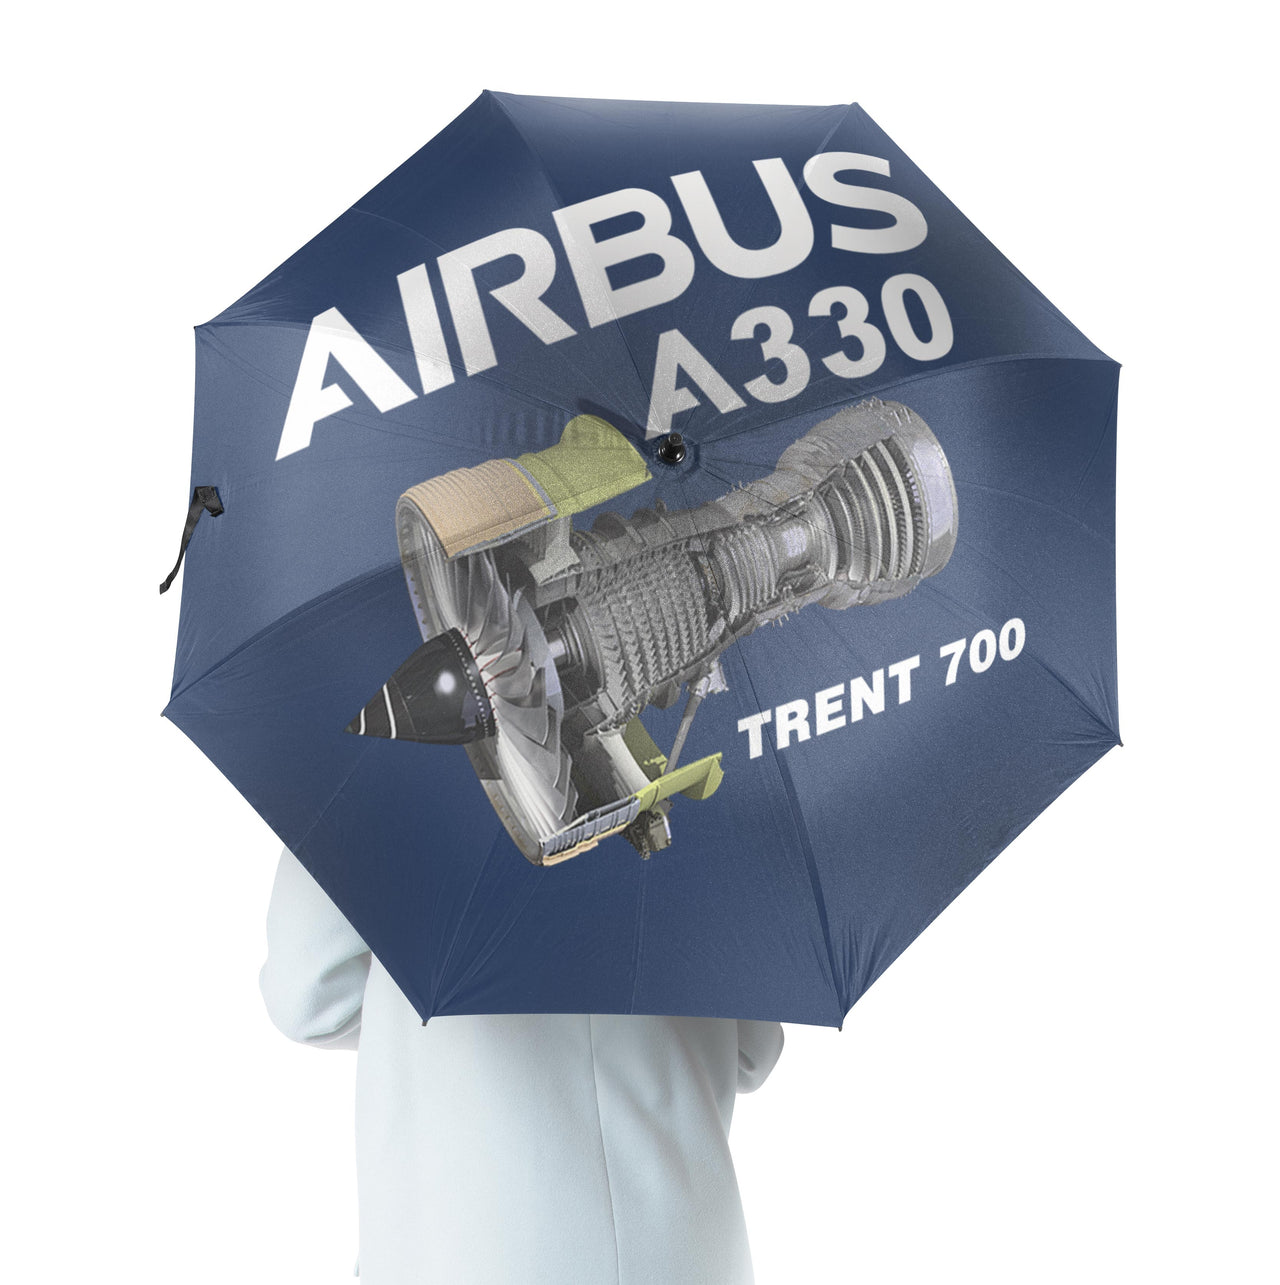 Airbus A330 & Trent 700 Engine Designed Umbrella